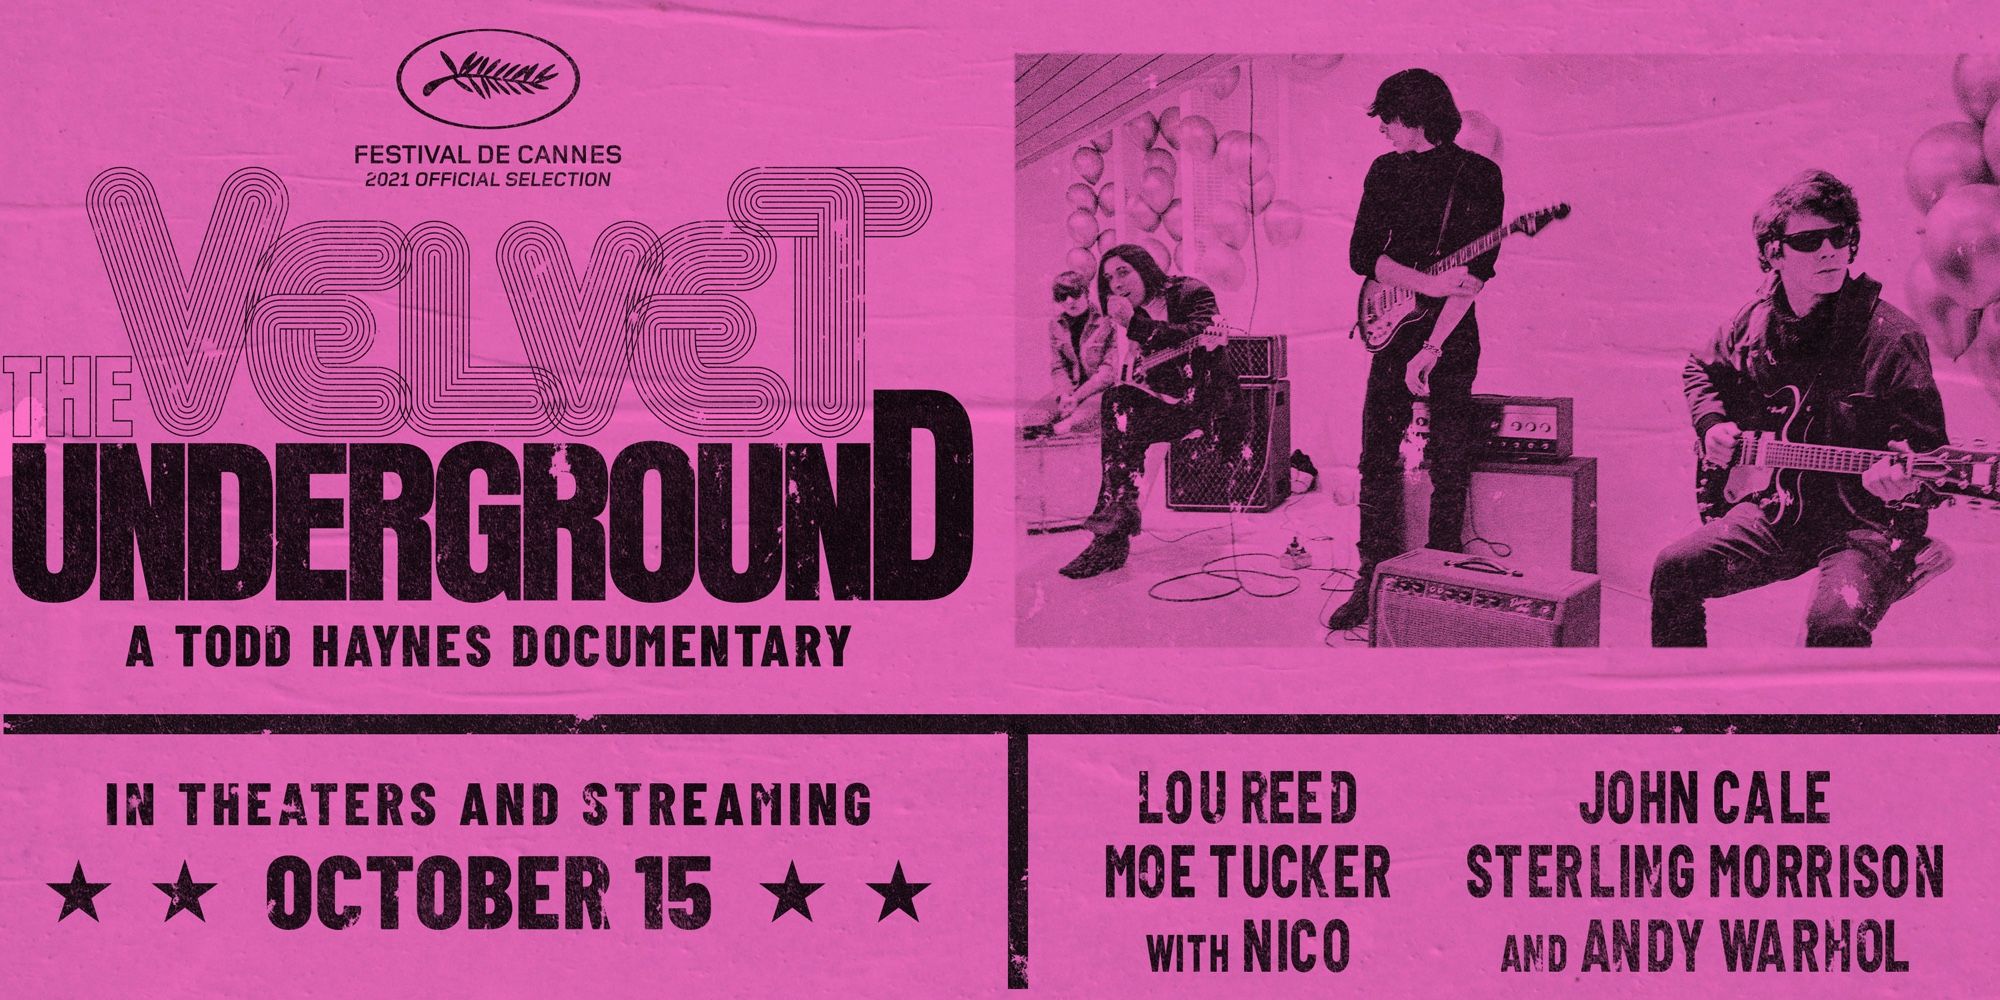 The Velvet underground documentary